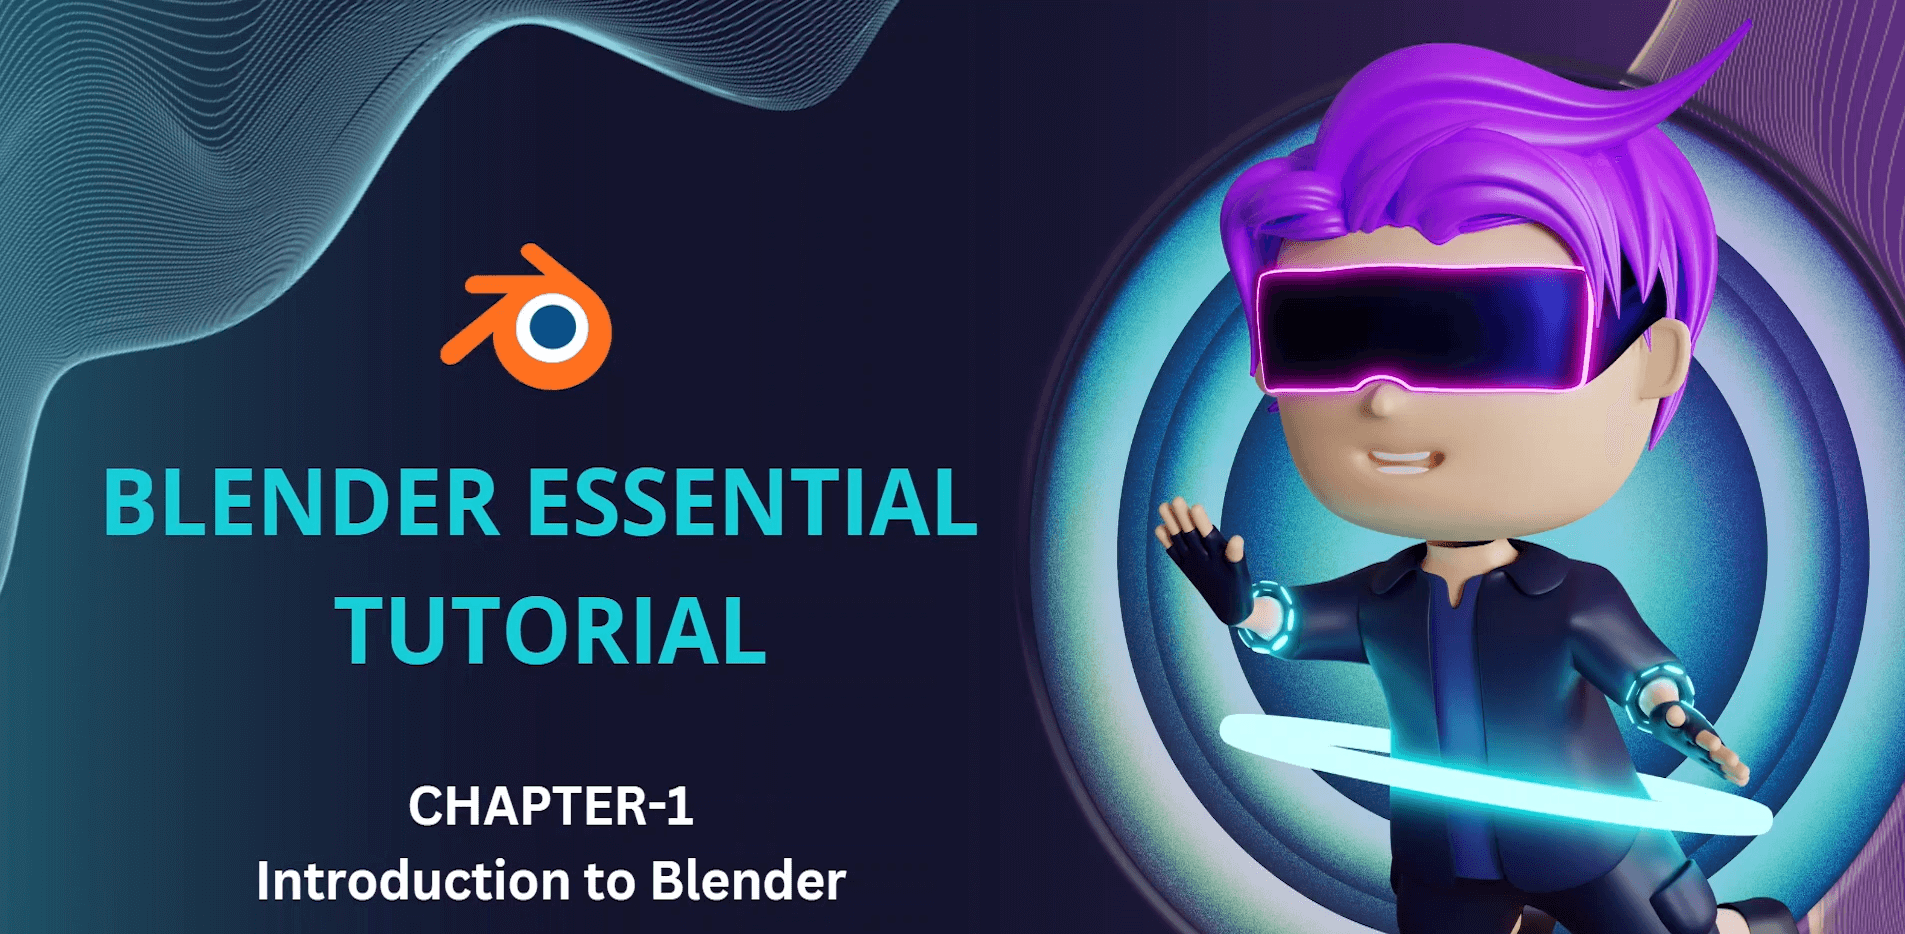 掌握 Blender 用于游戏艺术、电影和设计_Master the Blender for Game Art, Film & Design【blender教程】